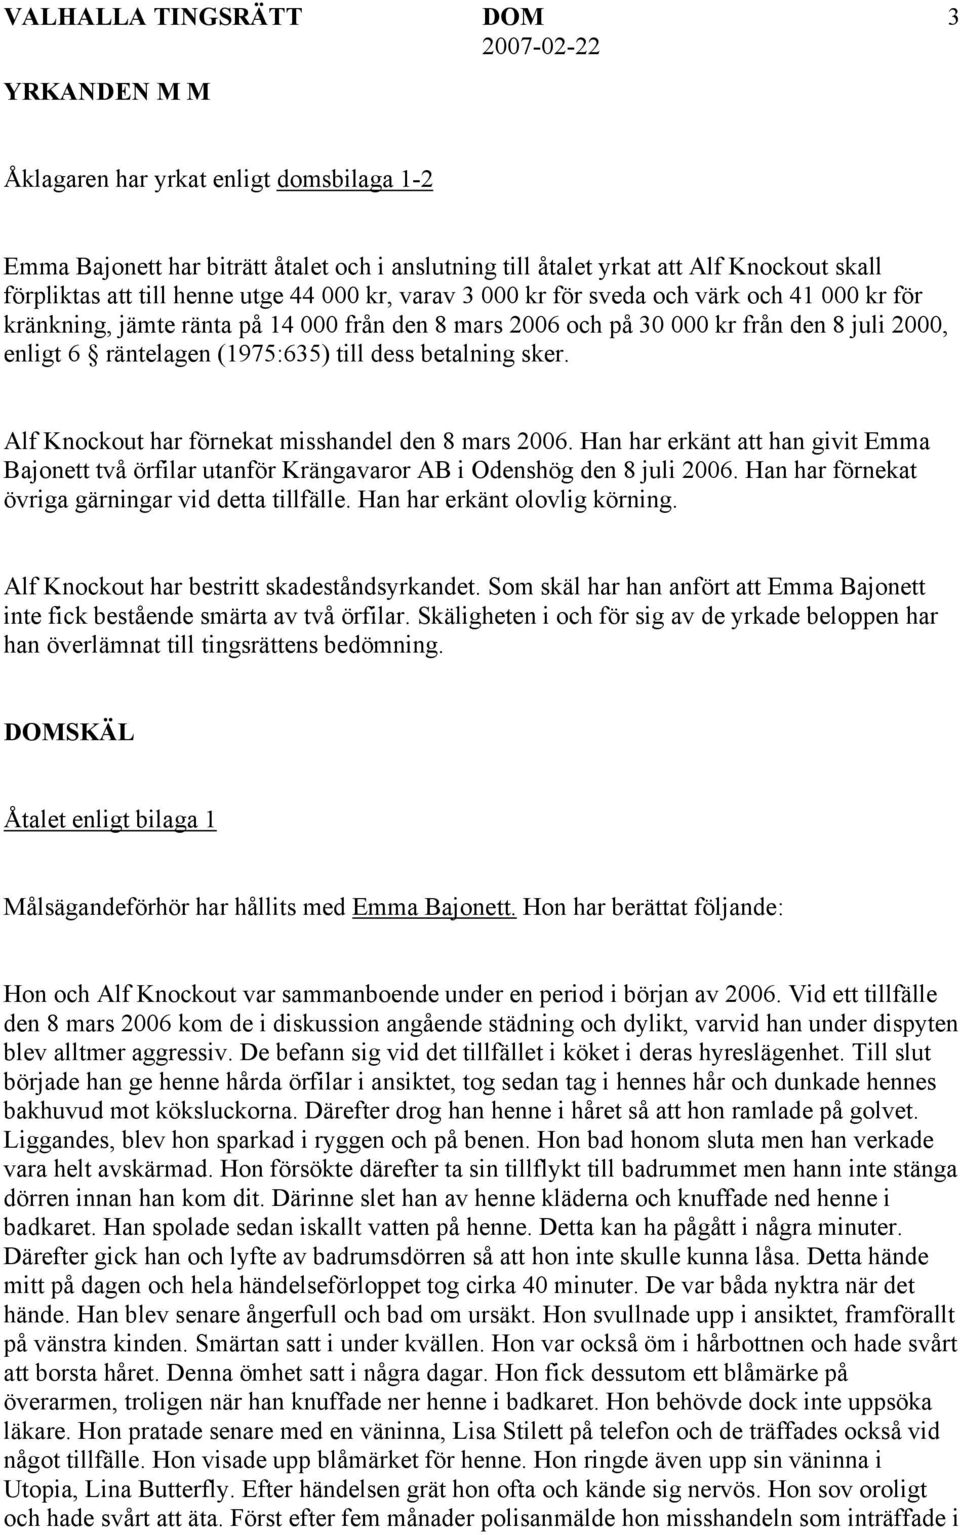 dess betalning sker. Alf Knockout har förnekat misshandel den 8 mars 2006. Han har erkänt att han givit Emma Bajonett två örfilar utanför Krängavaror AB i Odenshög den 8 juli 2006.